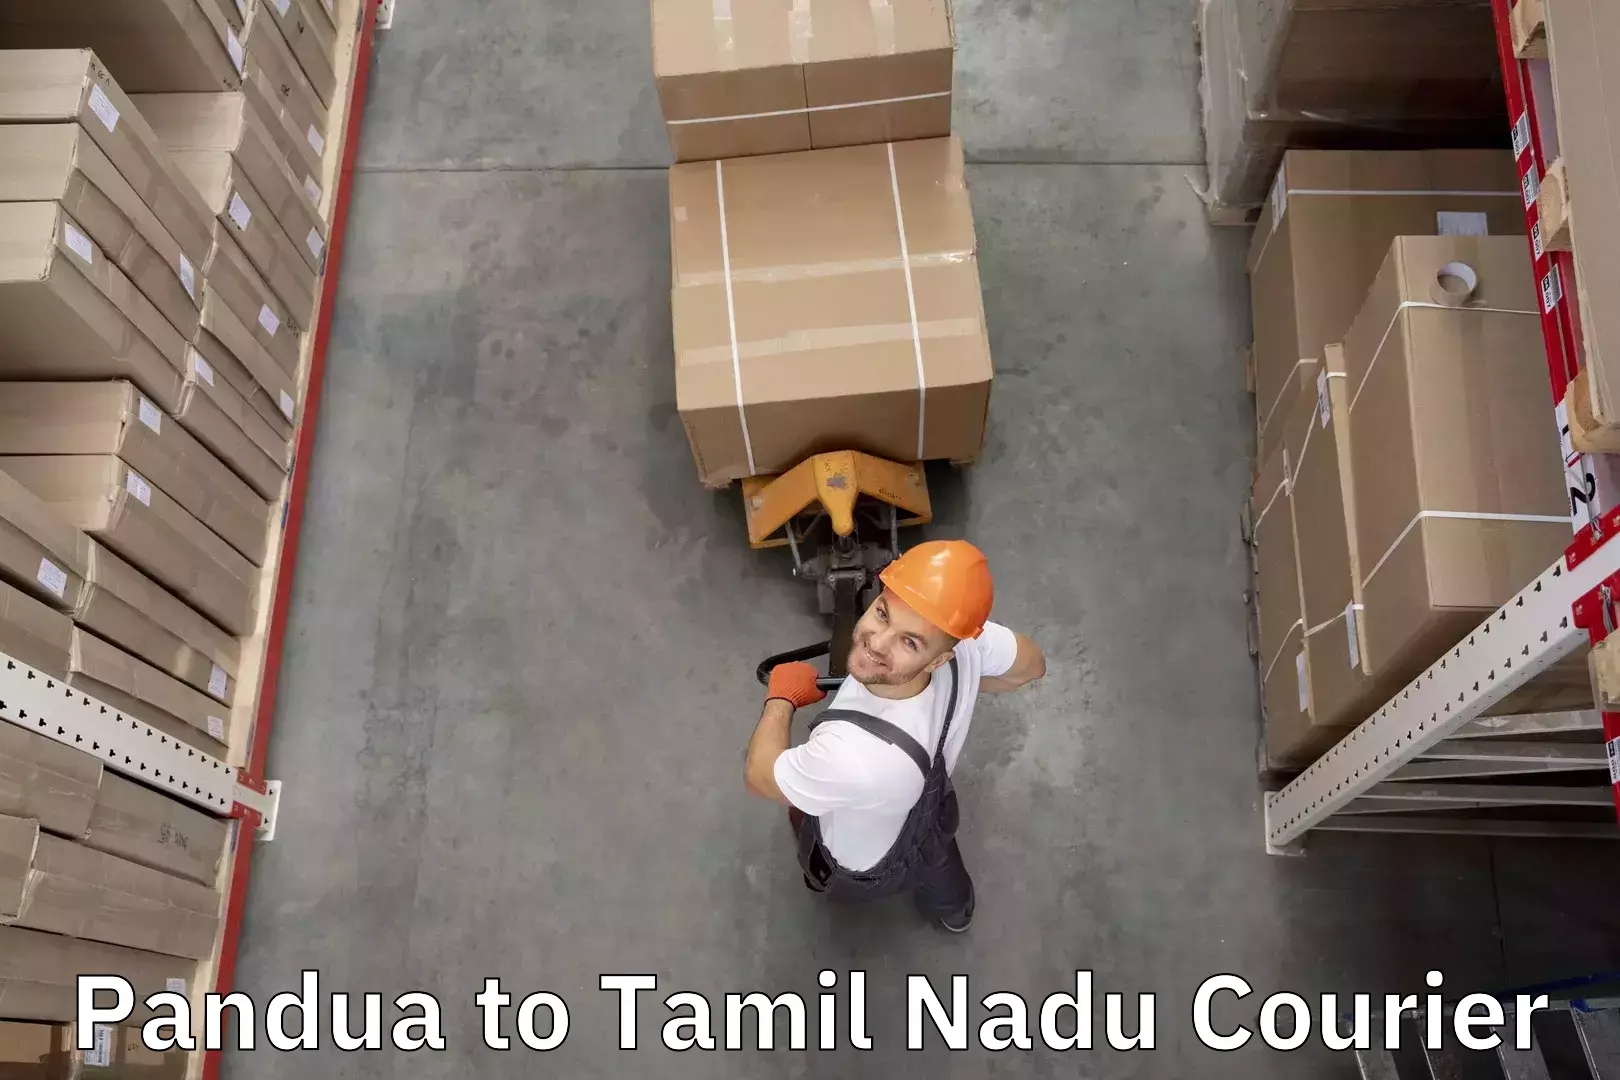 Baggage transport estimate Pandua to Tamil Nadu